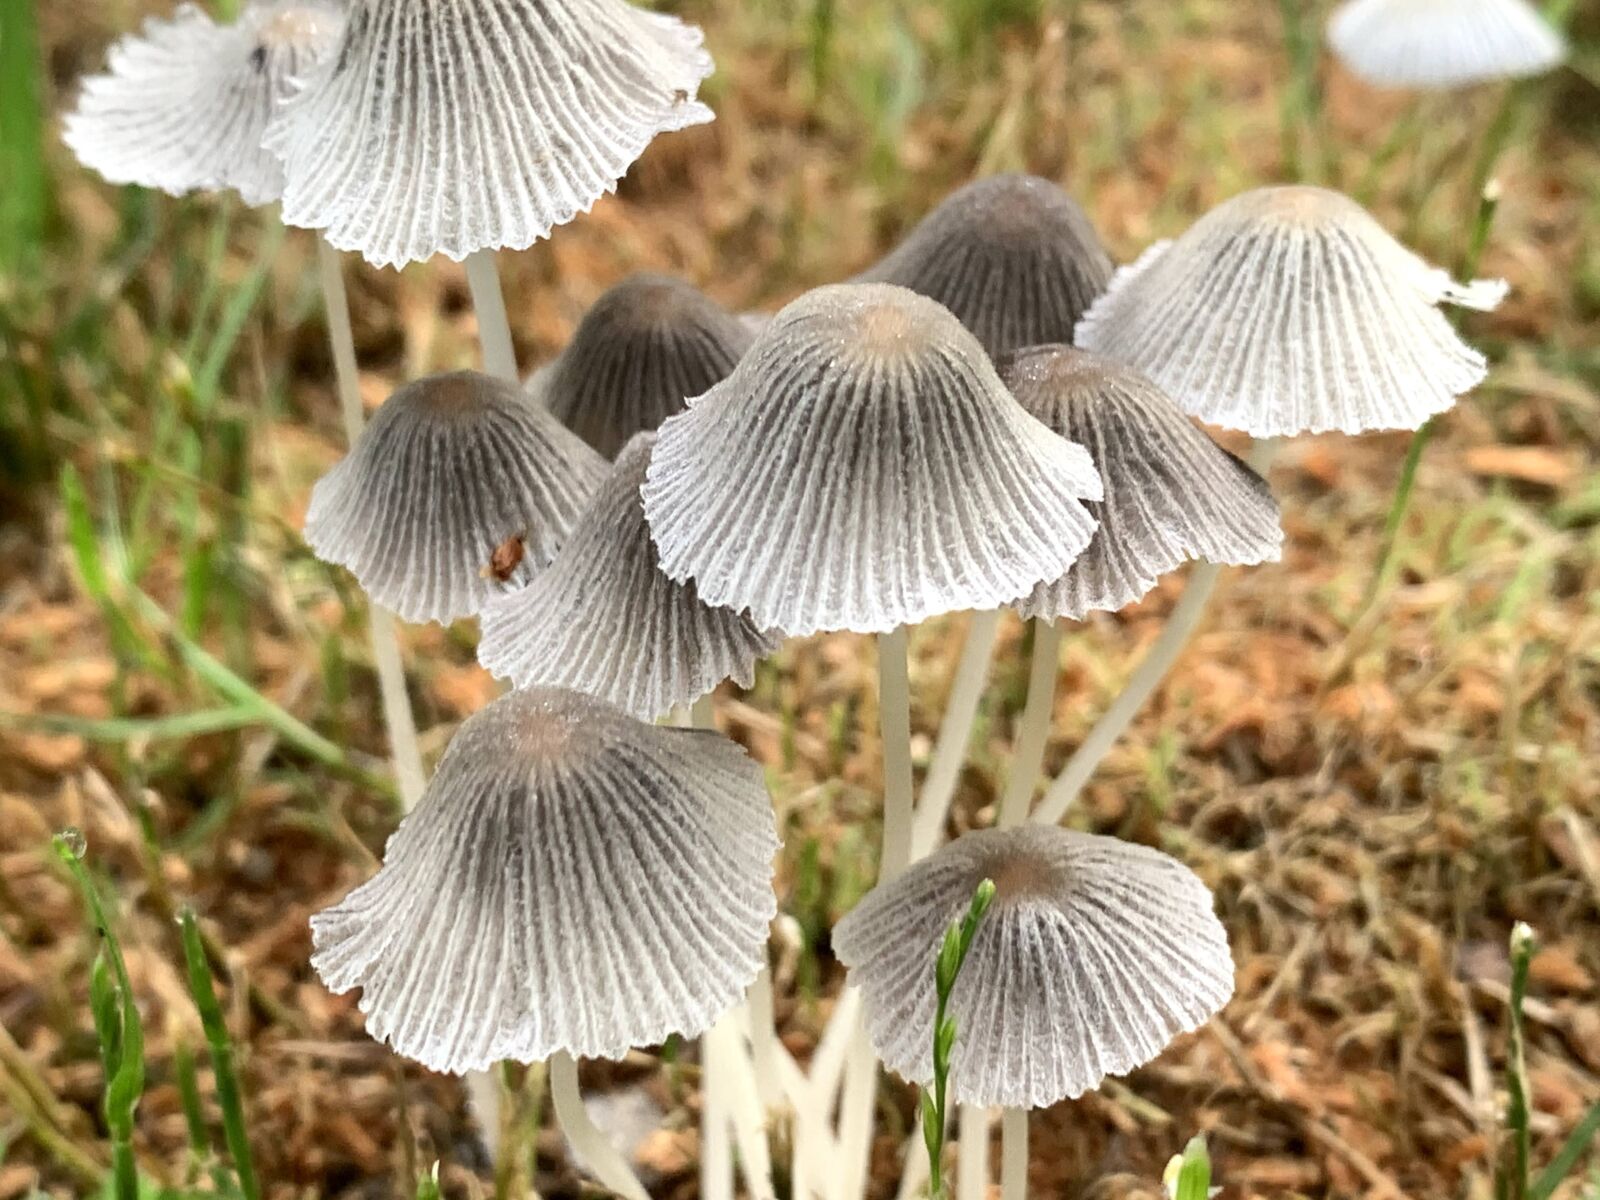 Apple iPhone XR sample photo. Mushrooms, mushroom, fungus photography